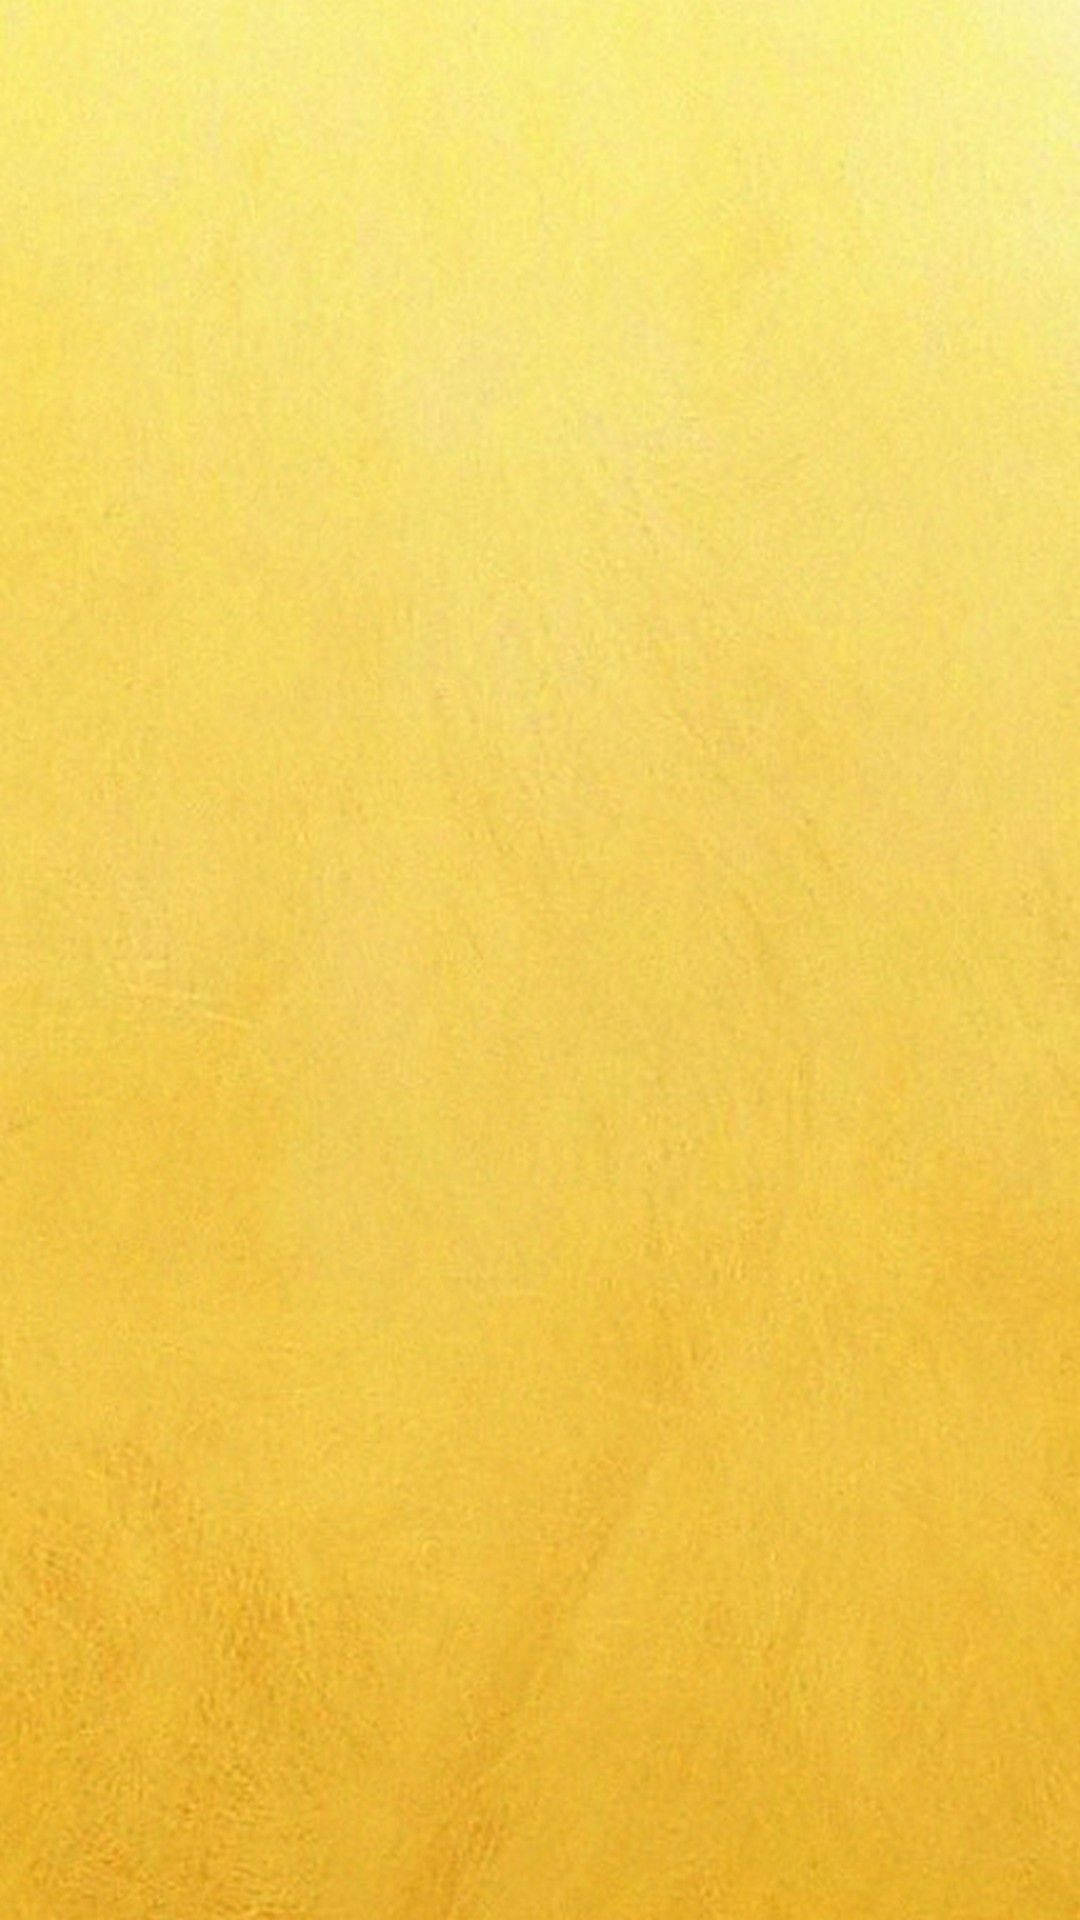 Plain Golden Plaster Texture iPhone Wallpaper